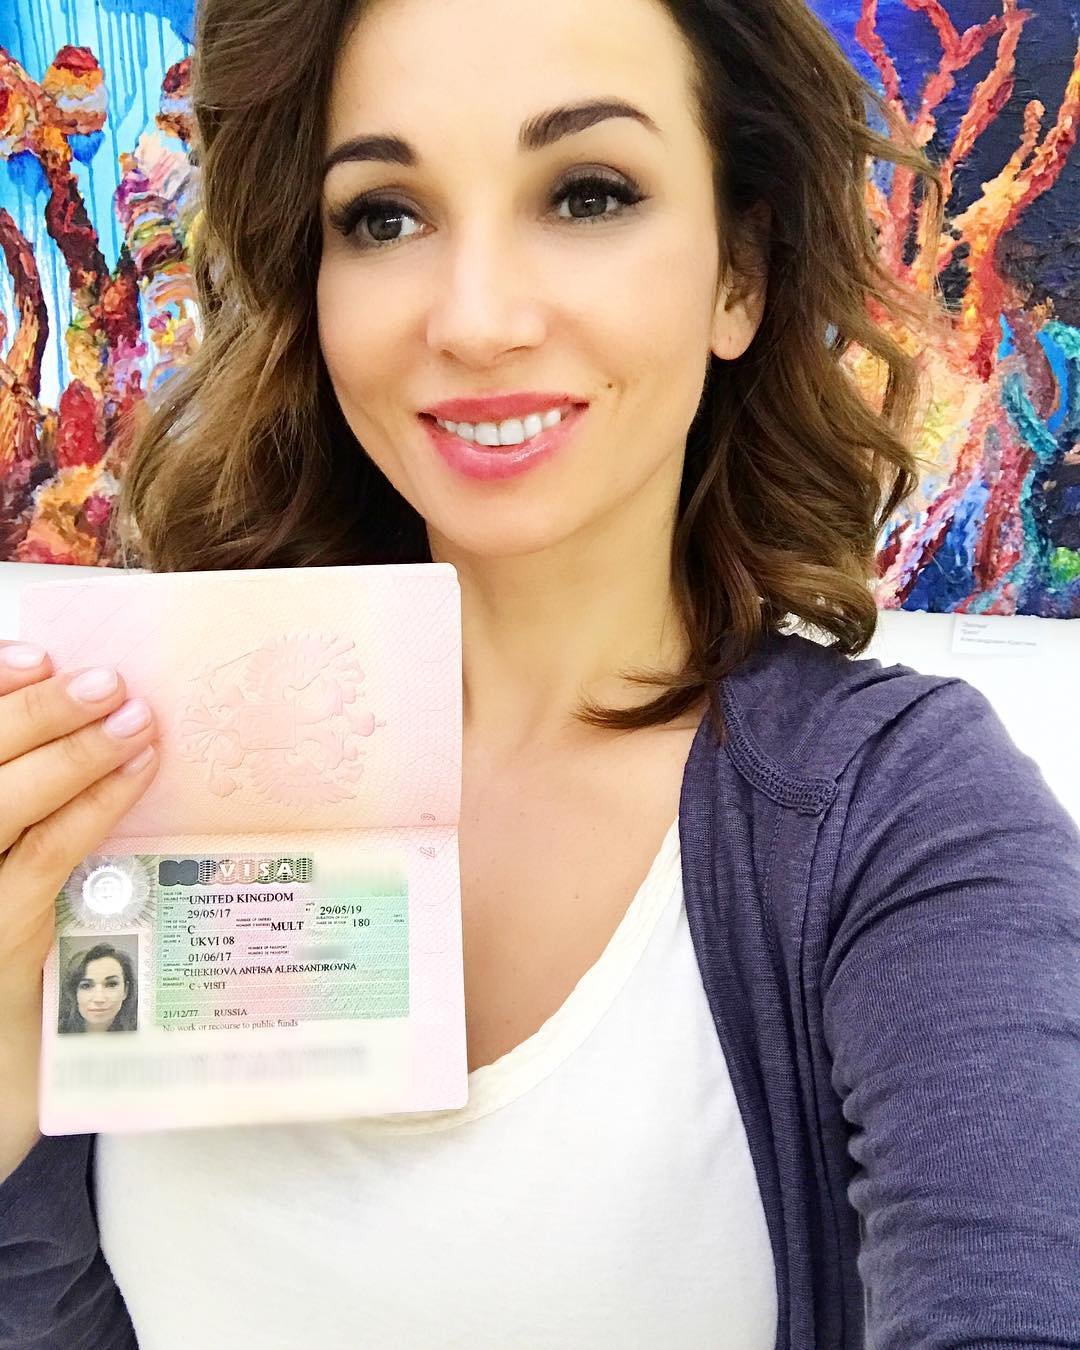 Фото паспорта и селфи